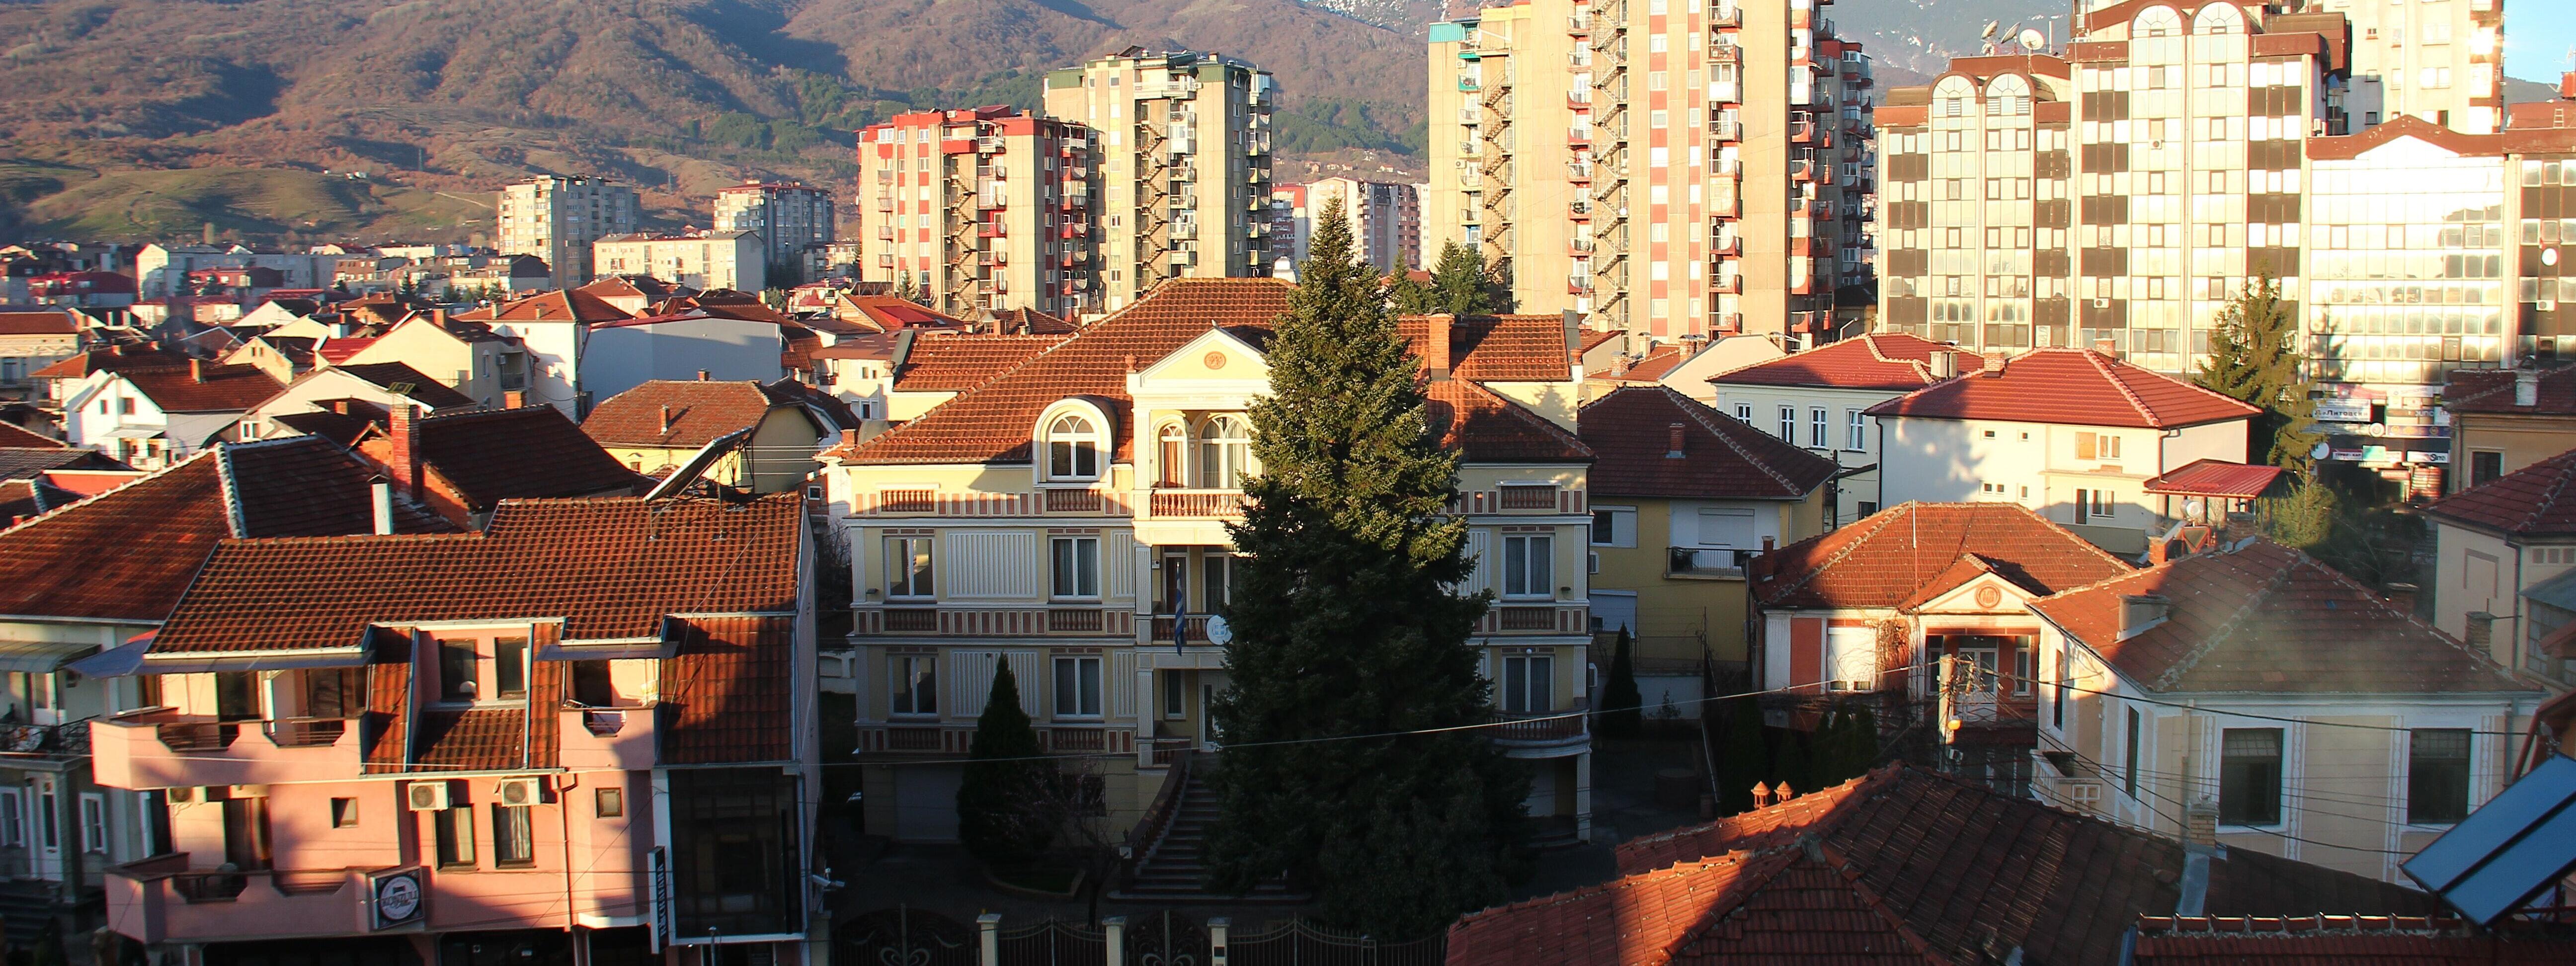 Blick auf Skopje